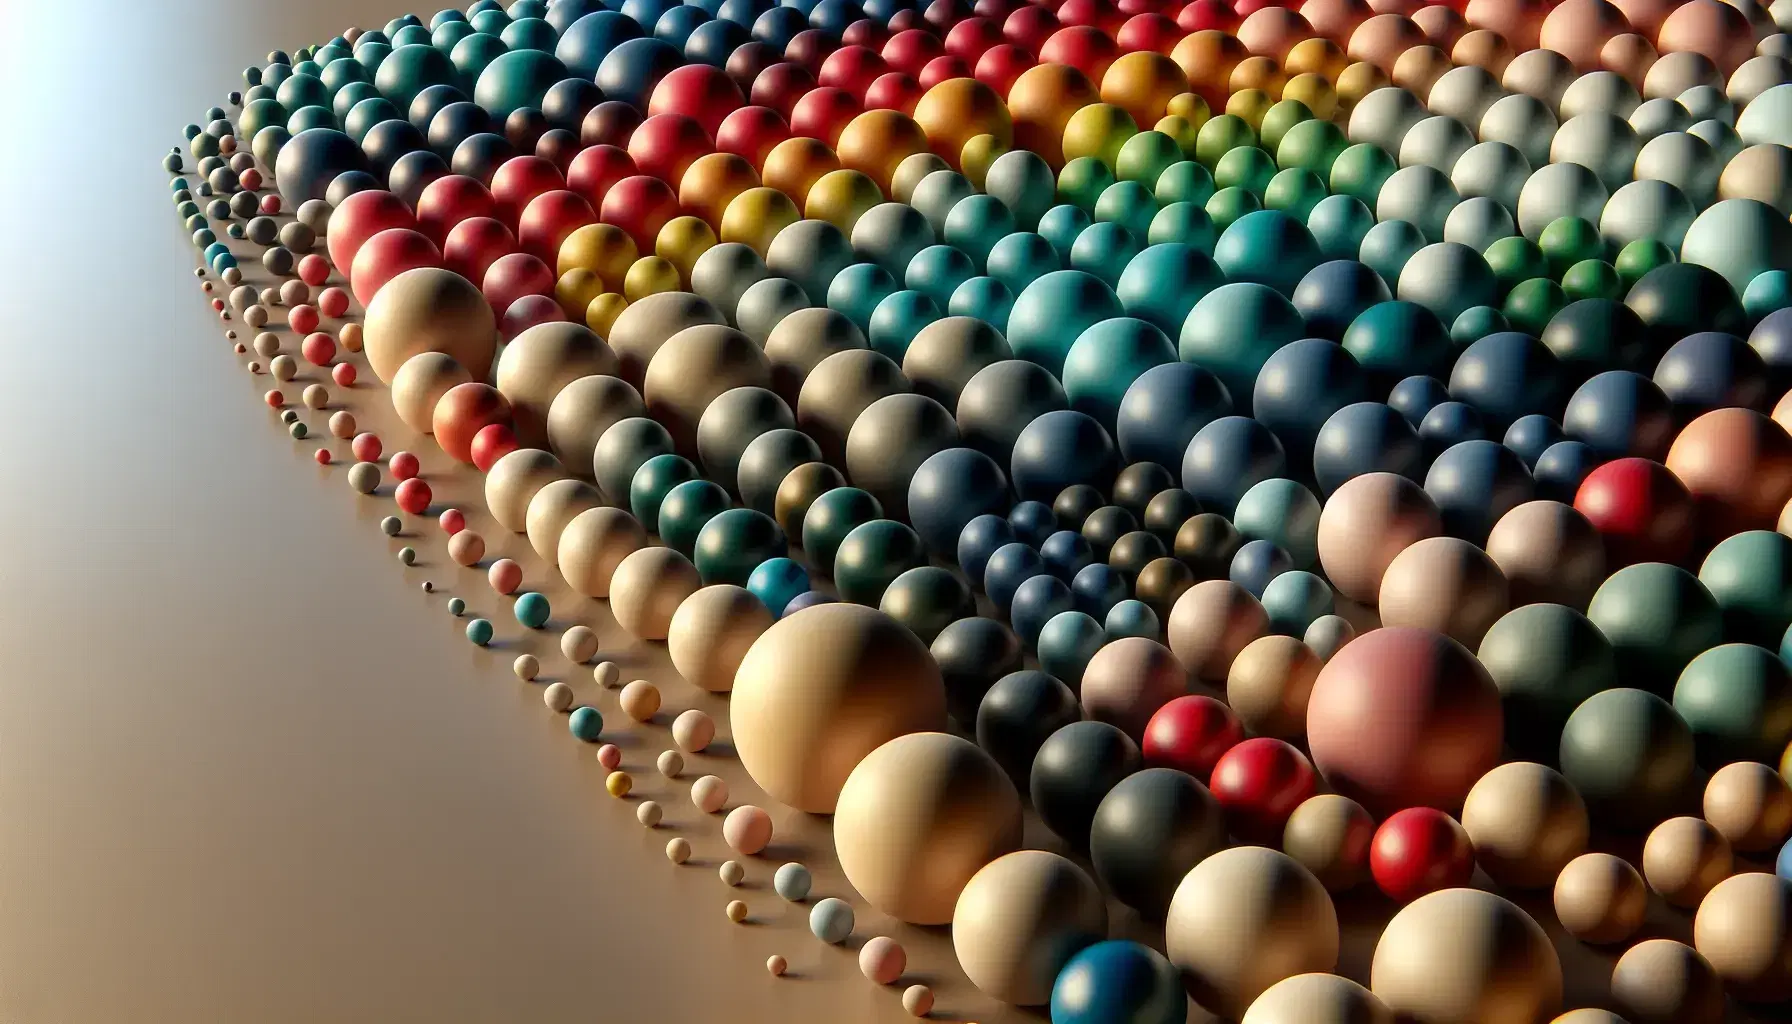 Colección de esferas multicolores en tonos de azul, rojo, verde y amarillo dispuestas en rejilla sobre superficie lisa, sin sombras duras.